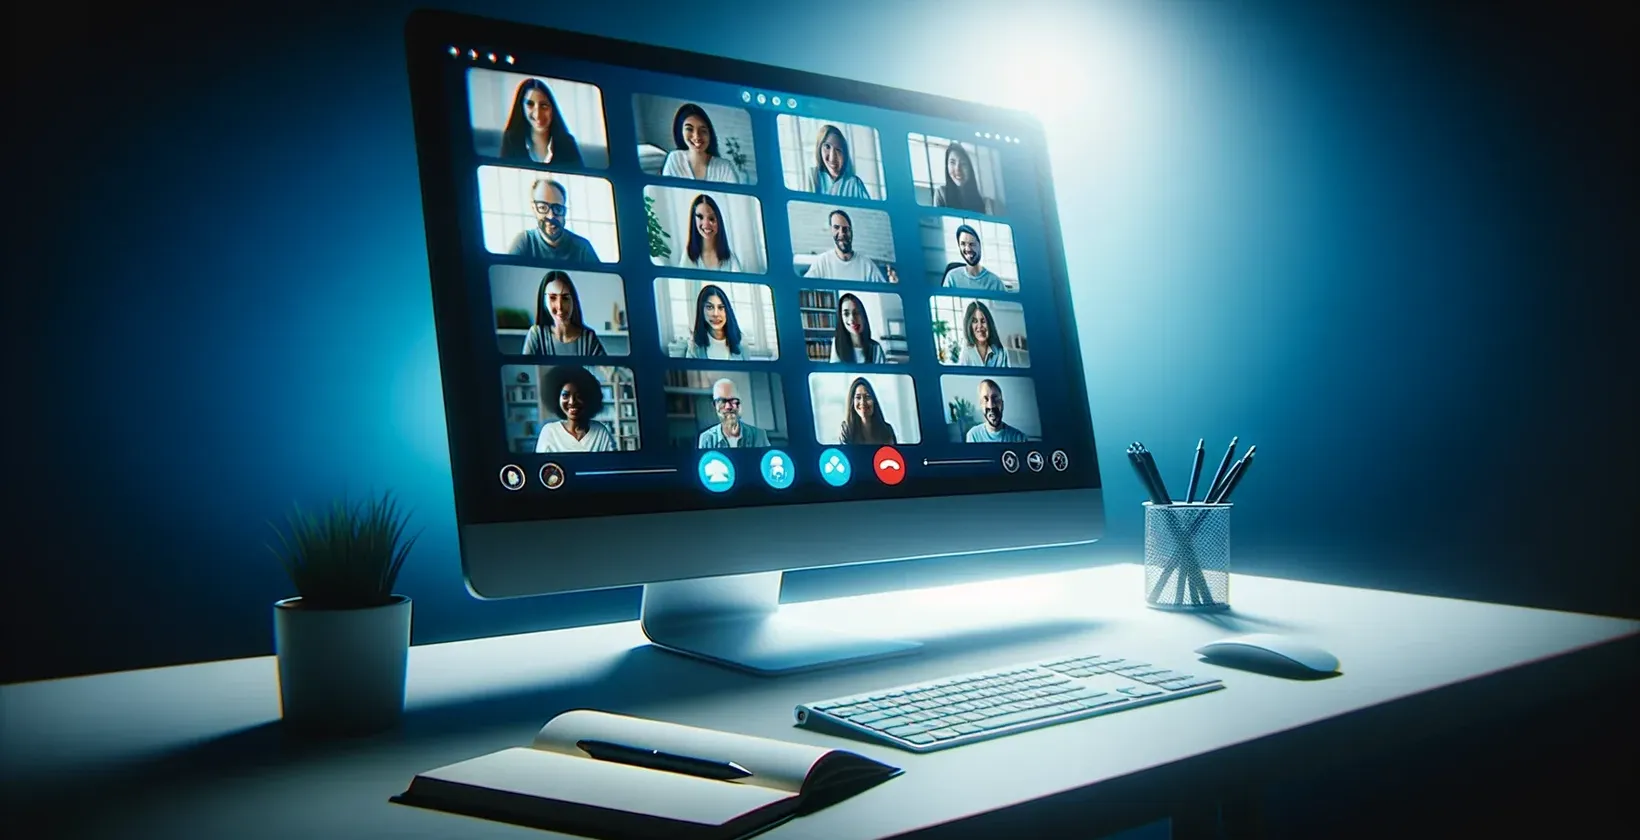 Uma imagem de uma tela de computador mostrando uma sessão @GoToMeeting, com um grupo de pessoas e transcrição ao vivo visível.